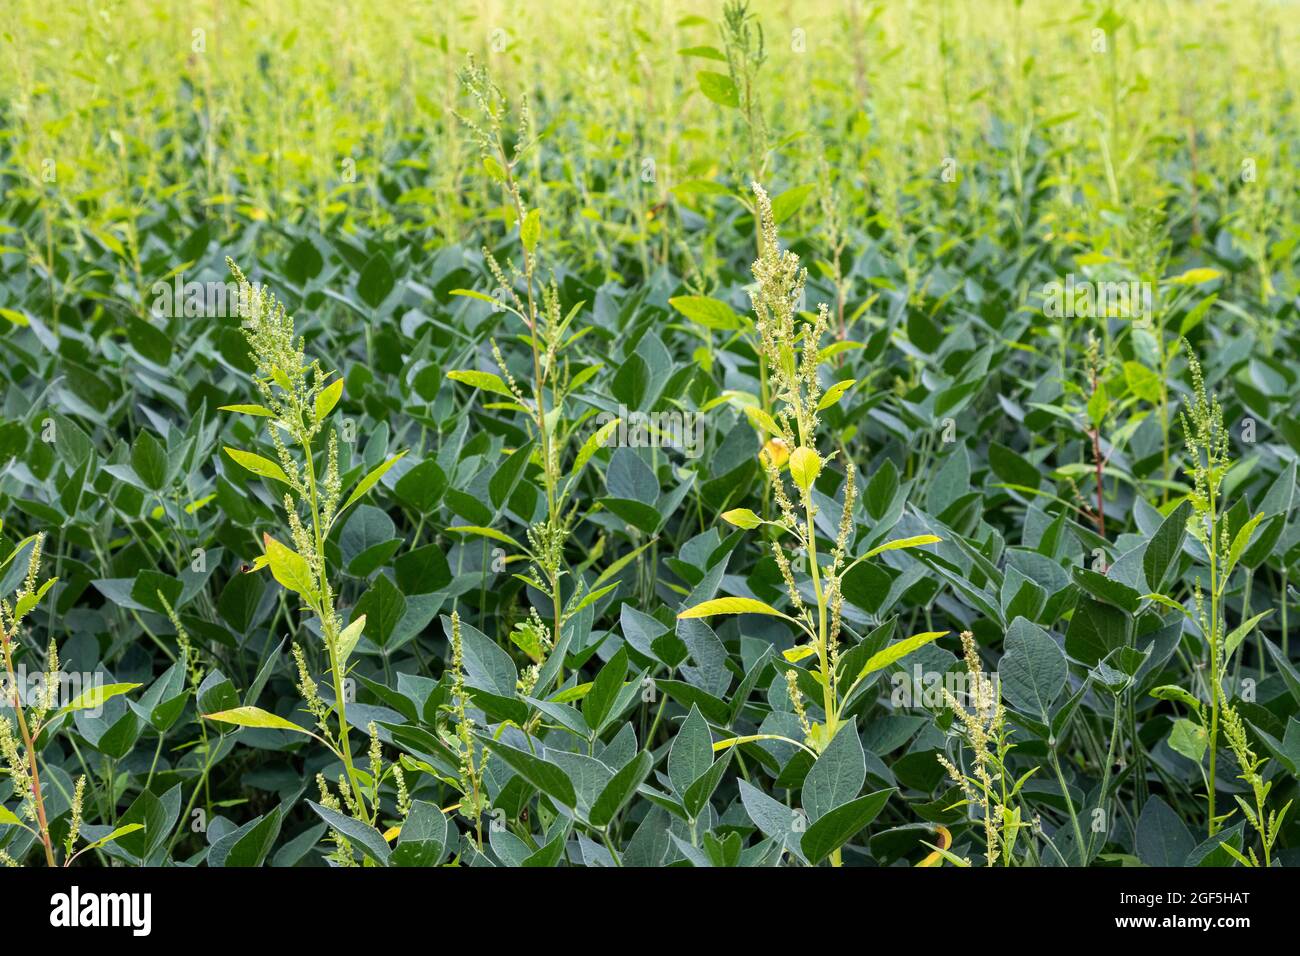 Three Oaks, Michigan - une mauvaise herbe résistante aux herbicides, Palmer amaranth, qui pousse dans un champ de soja. La mauvaise herbe a développé une résistance à la plupart des truies Banque D'Images